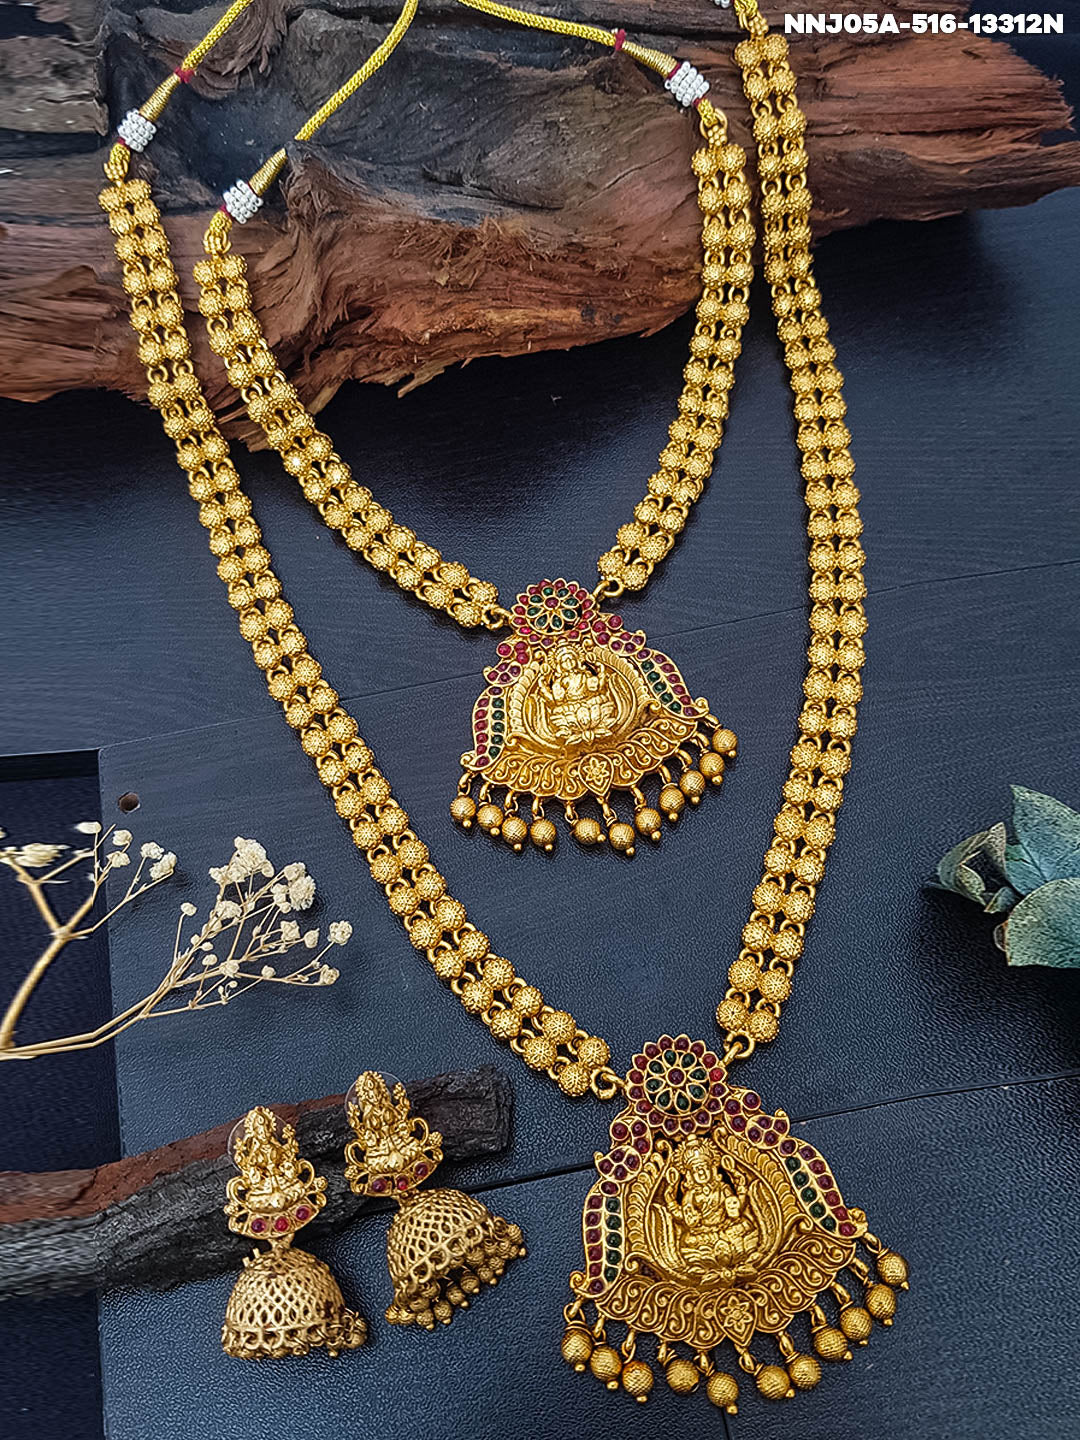 Antique Gold Finish Laxmi Necklace Set Combo 13312N